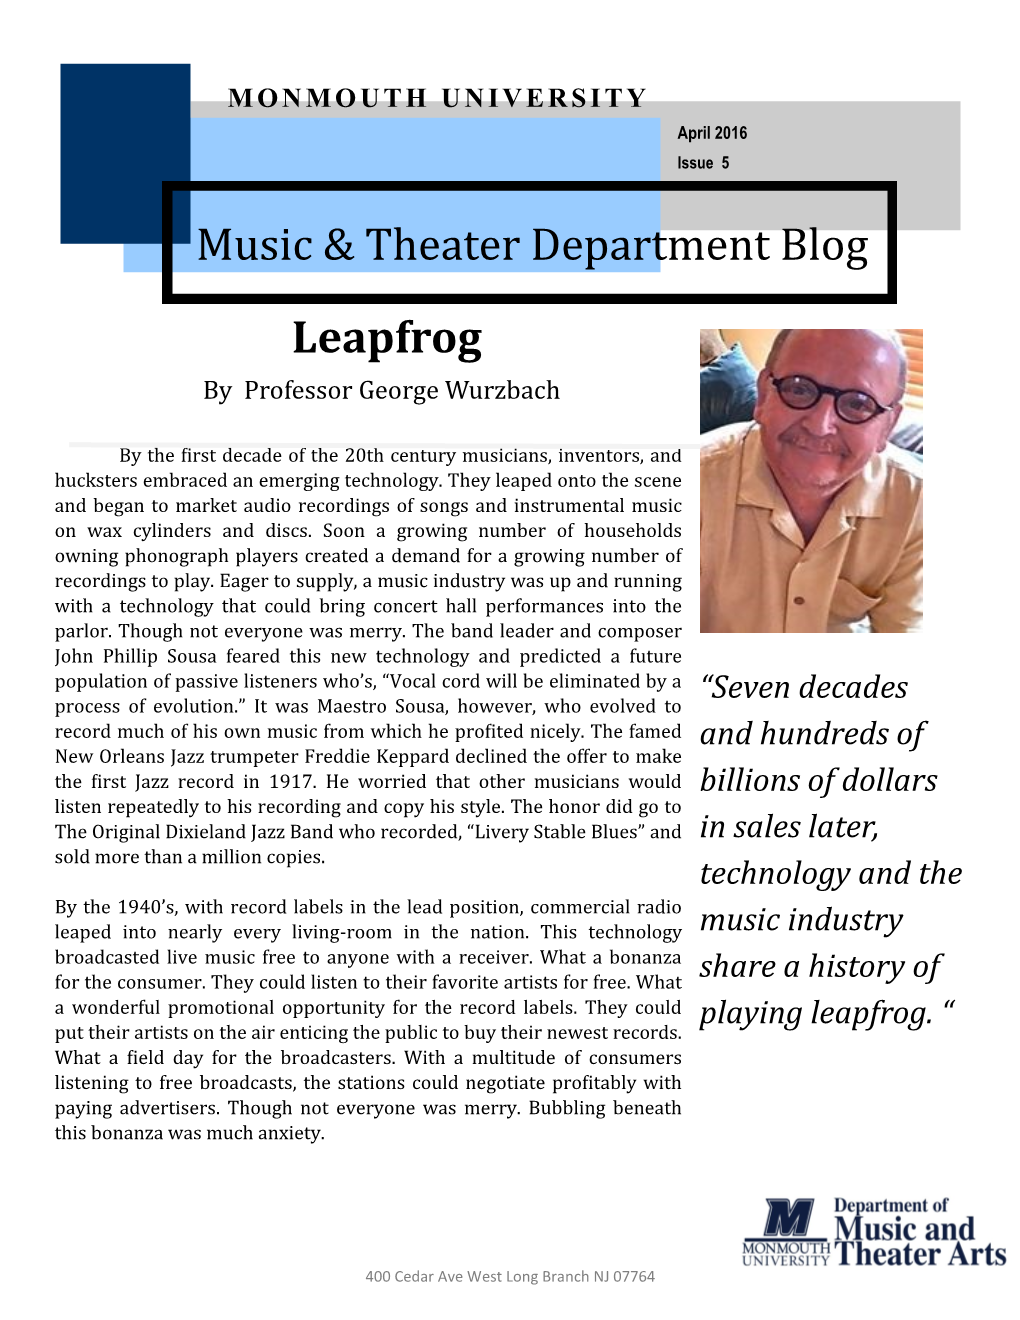 Music & Theater Department Blog Leapfrog